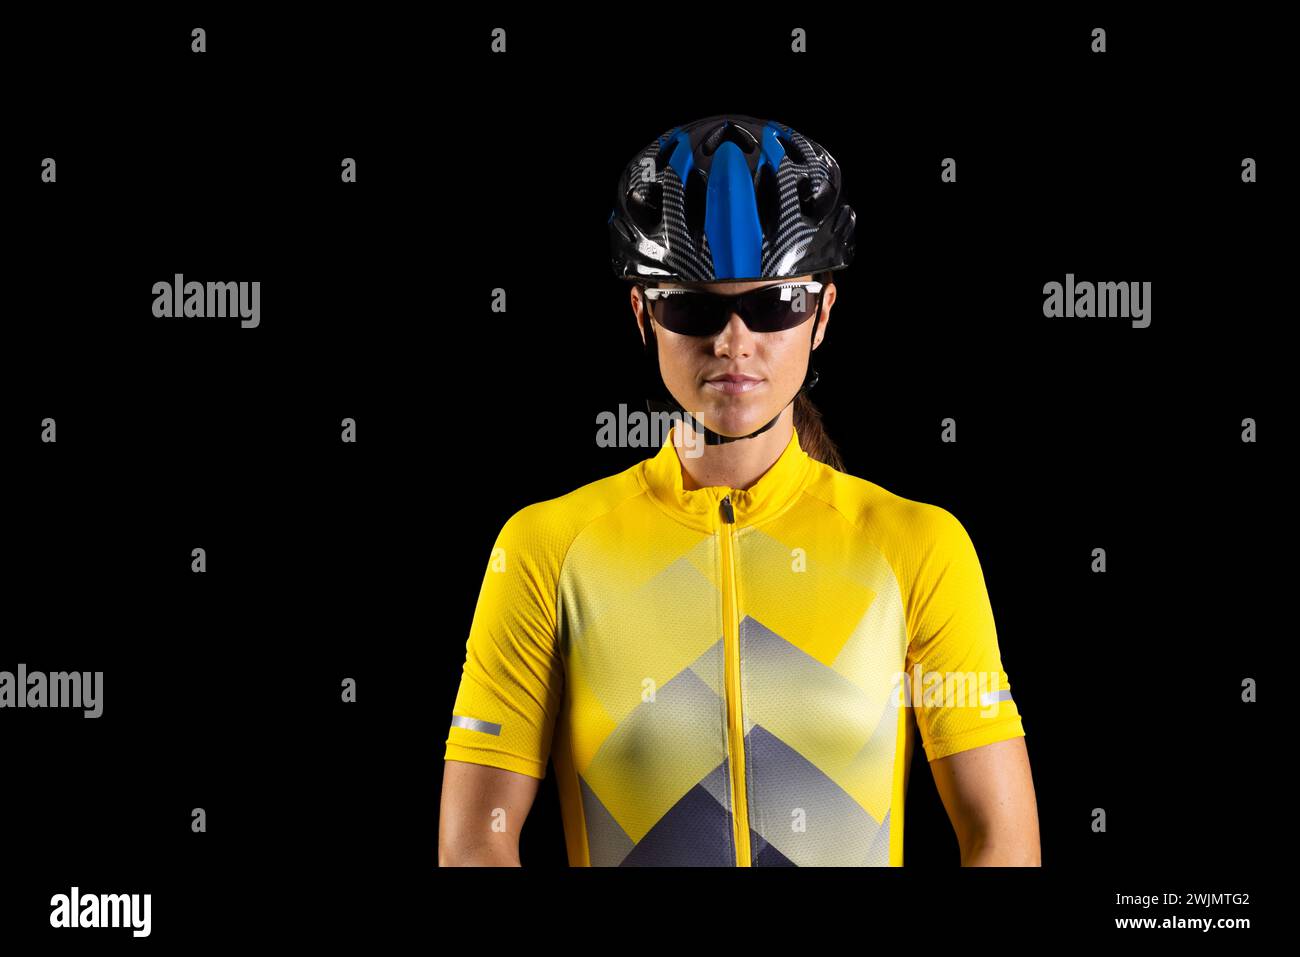 Il ciclista professionista in maglia gialla posa con sicurezza, con spazio per le copie Foto Stock